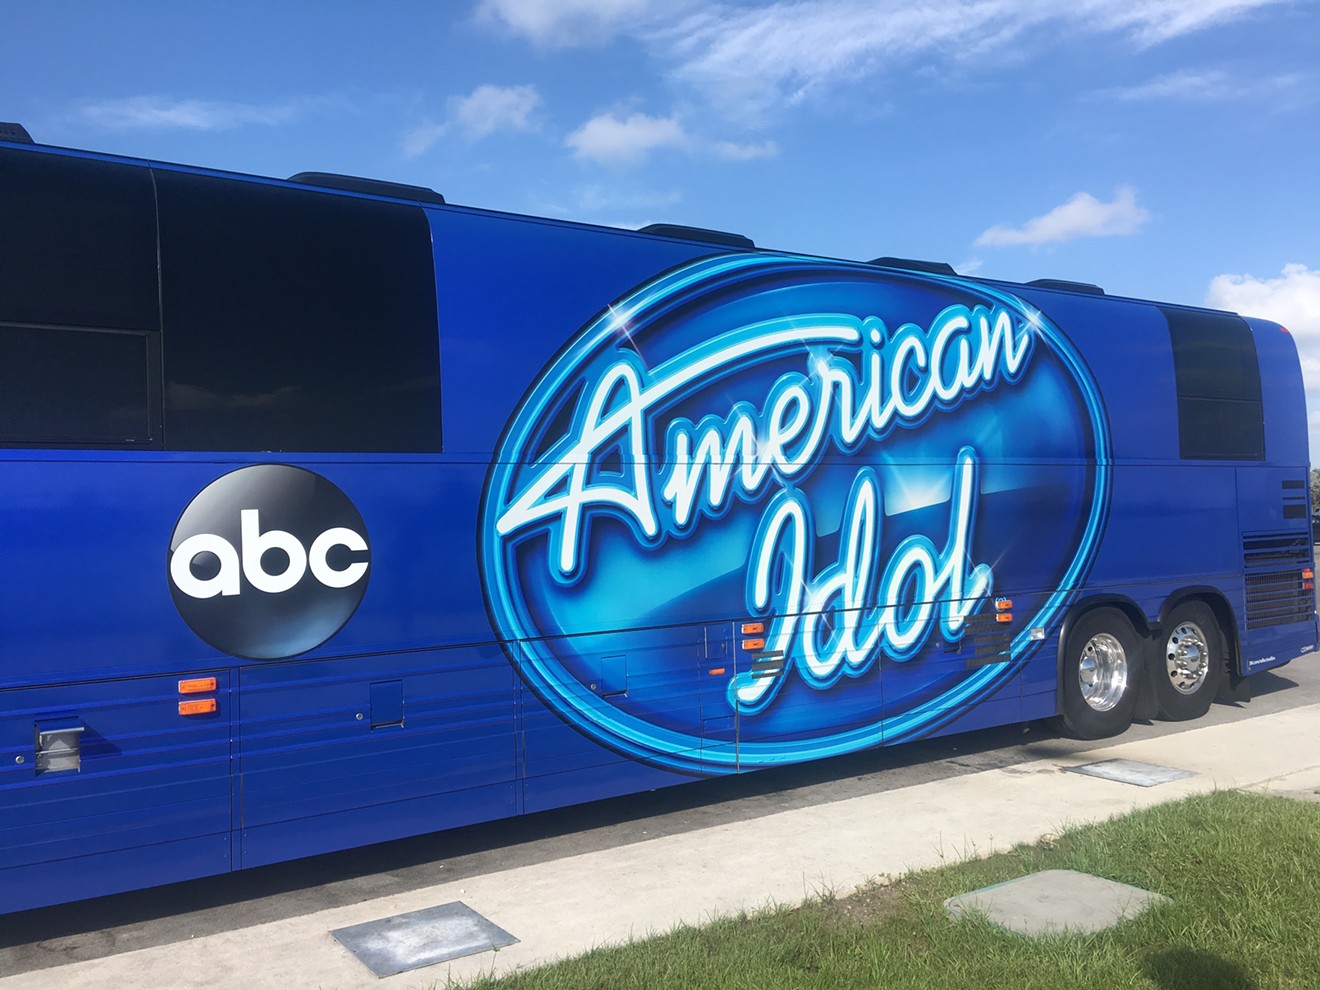 The Idol bus